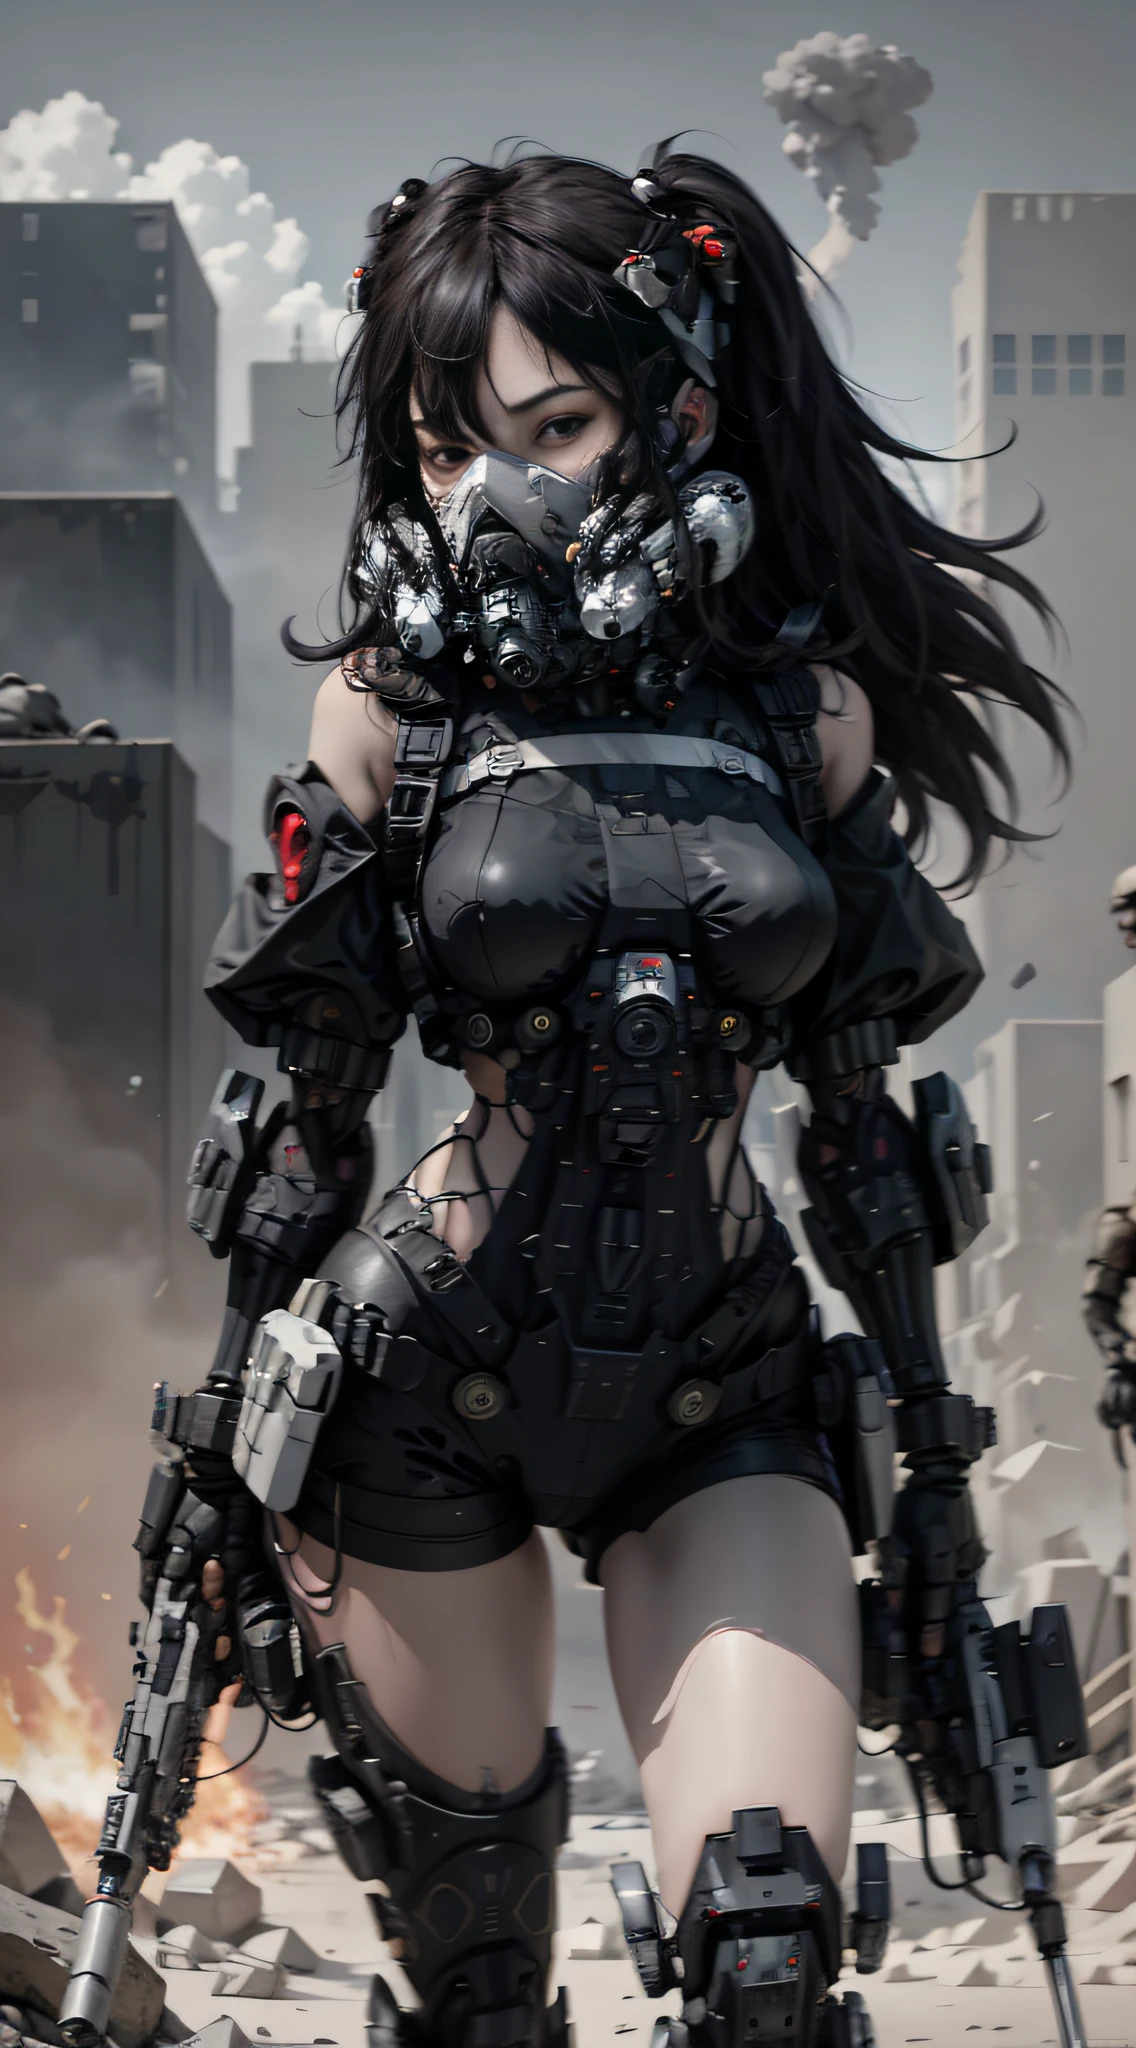 Dies ist ein CG Unity 8k Wallpaper mit ultra-detaillierten, hochauflösend und in Top-Qualität im Cyberpunk-Stil, dominiert von Schwarz und Rot. In dem Bild, ein schönes Mädchen mit kurzen weißen unordentlichen Haaren, ein zartes Gesicht, trägt eine Dampf-Mecha-Maske, auf den Ruinen stehen, (Kampfschaden: 1.5), Die Aktion einer Frau, die ein schweres Scharfschützengewehr in der Hand hält,